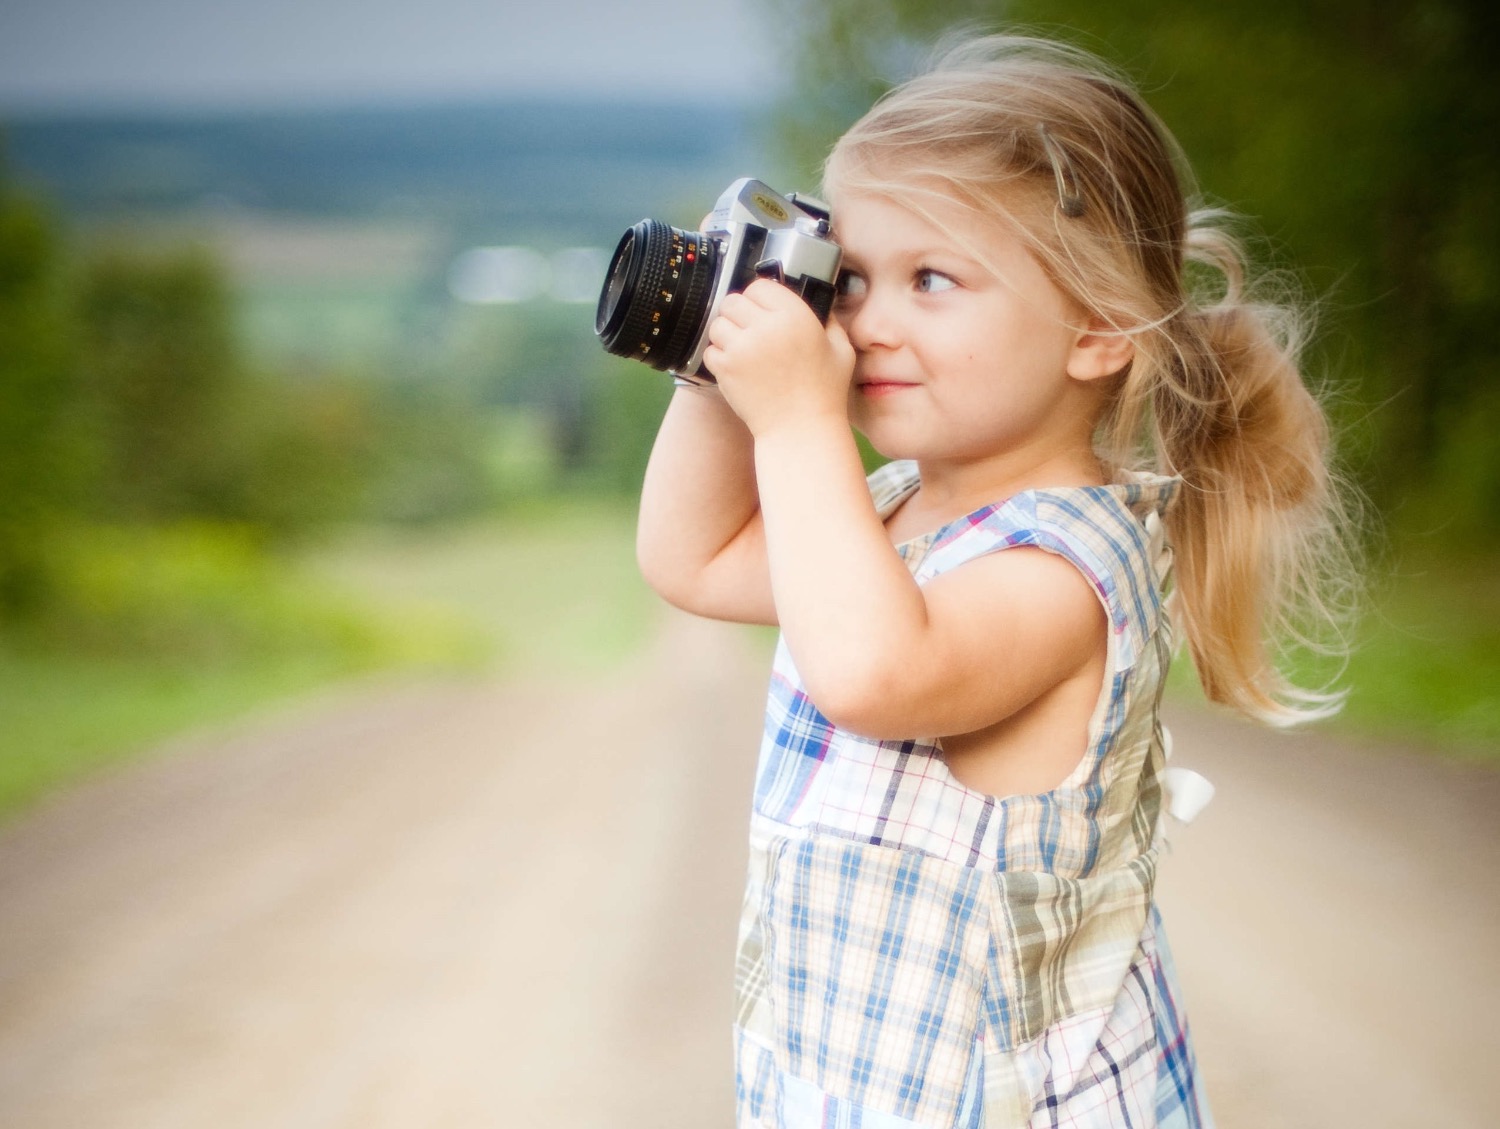 Titelbild zur Idee für die Beschäftigung mit Kindern '(31) Kinder fotografieren ihr zuhause'